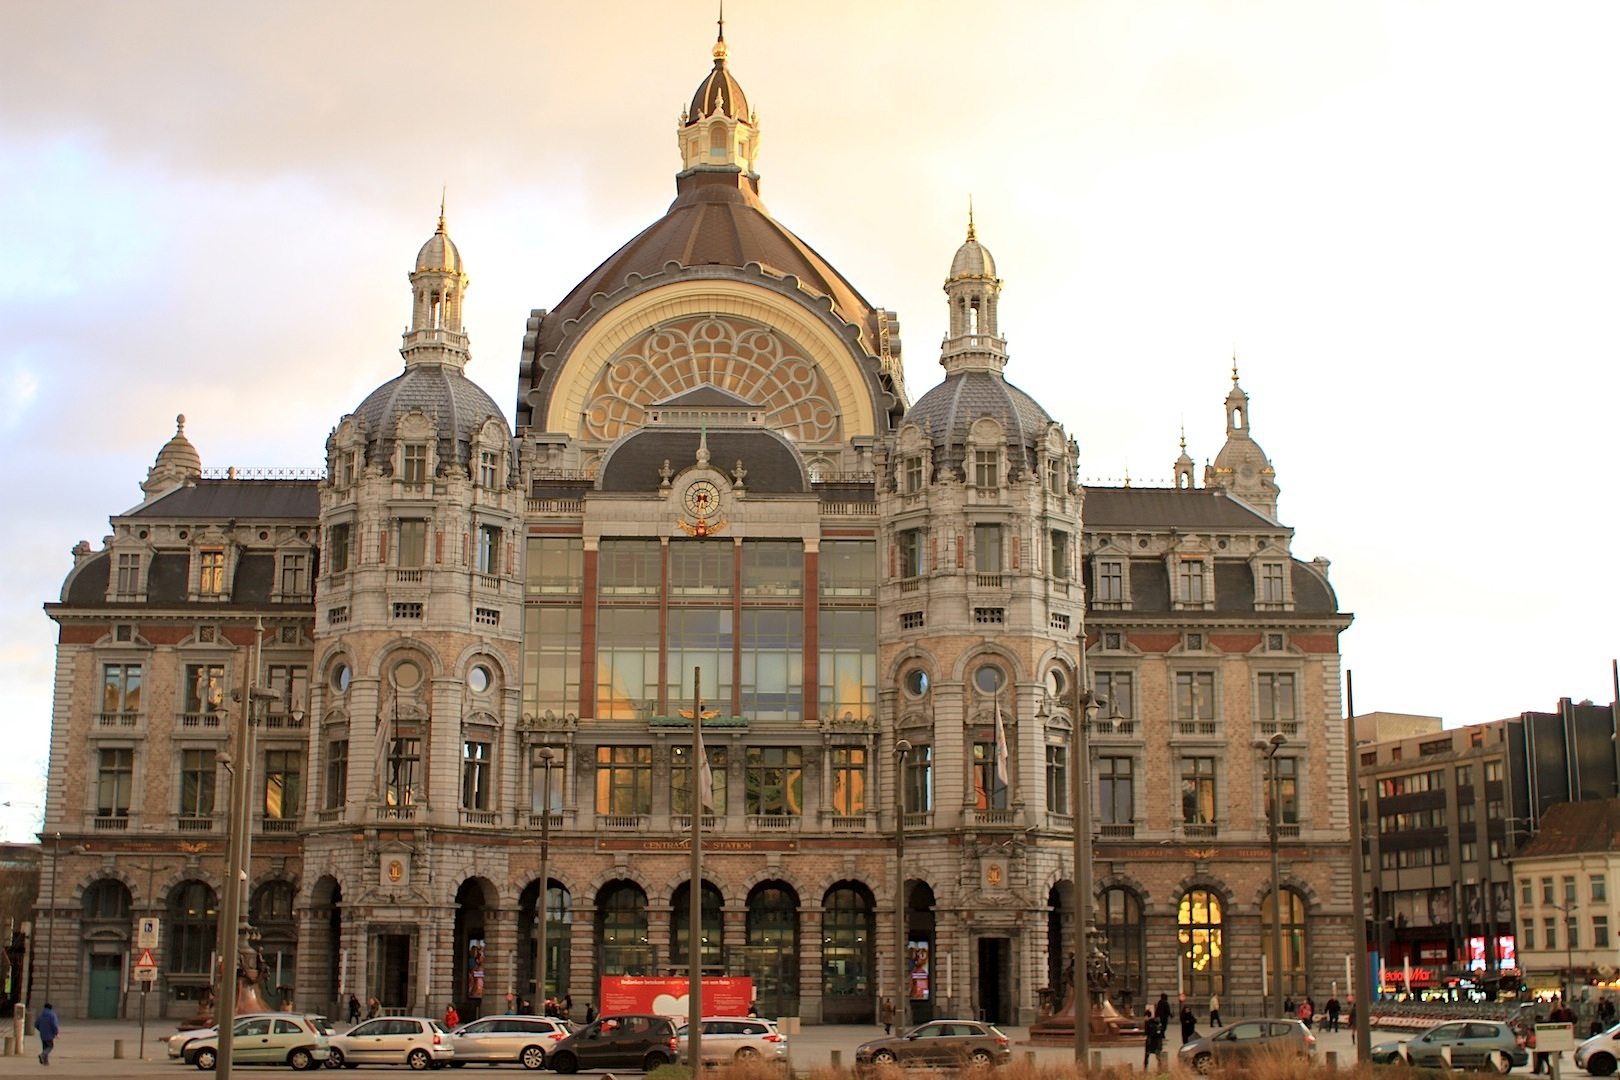 Oder "Spoorwegkathedraal": so wird der Hauptbahnhof von Antwerpen wegen seiner 75 Meter hohen, weithin sichtbaren Kuppel genannt.